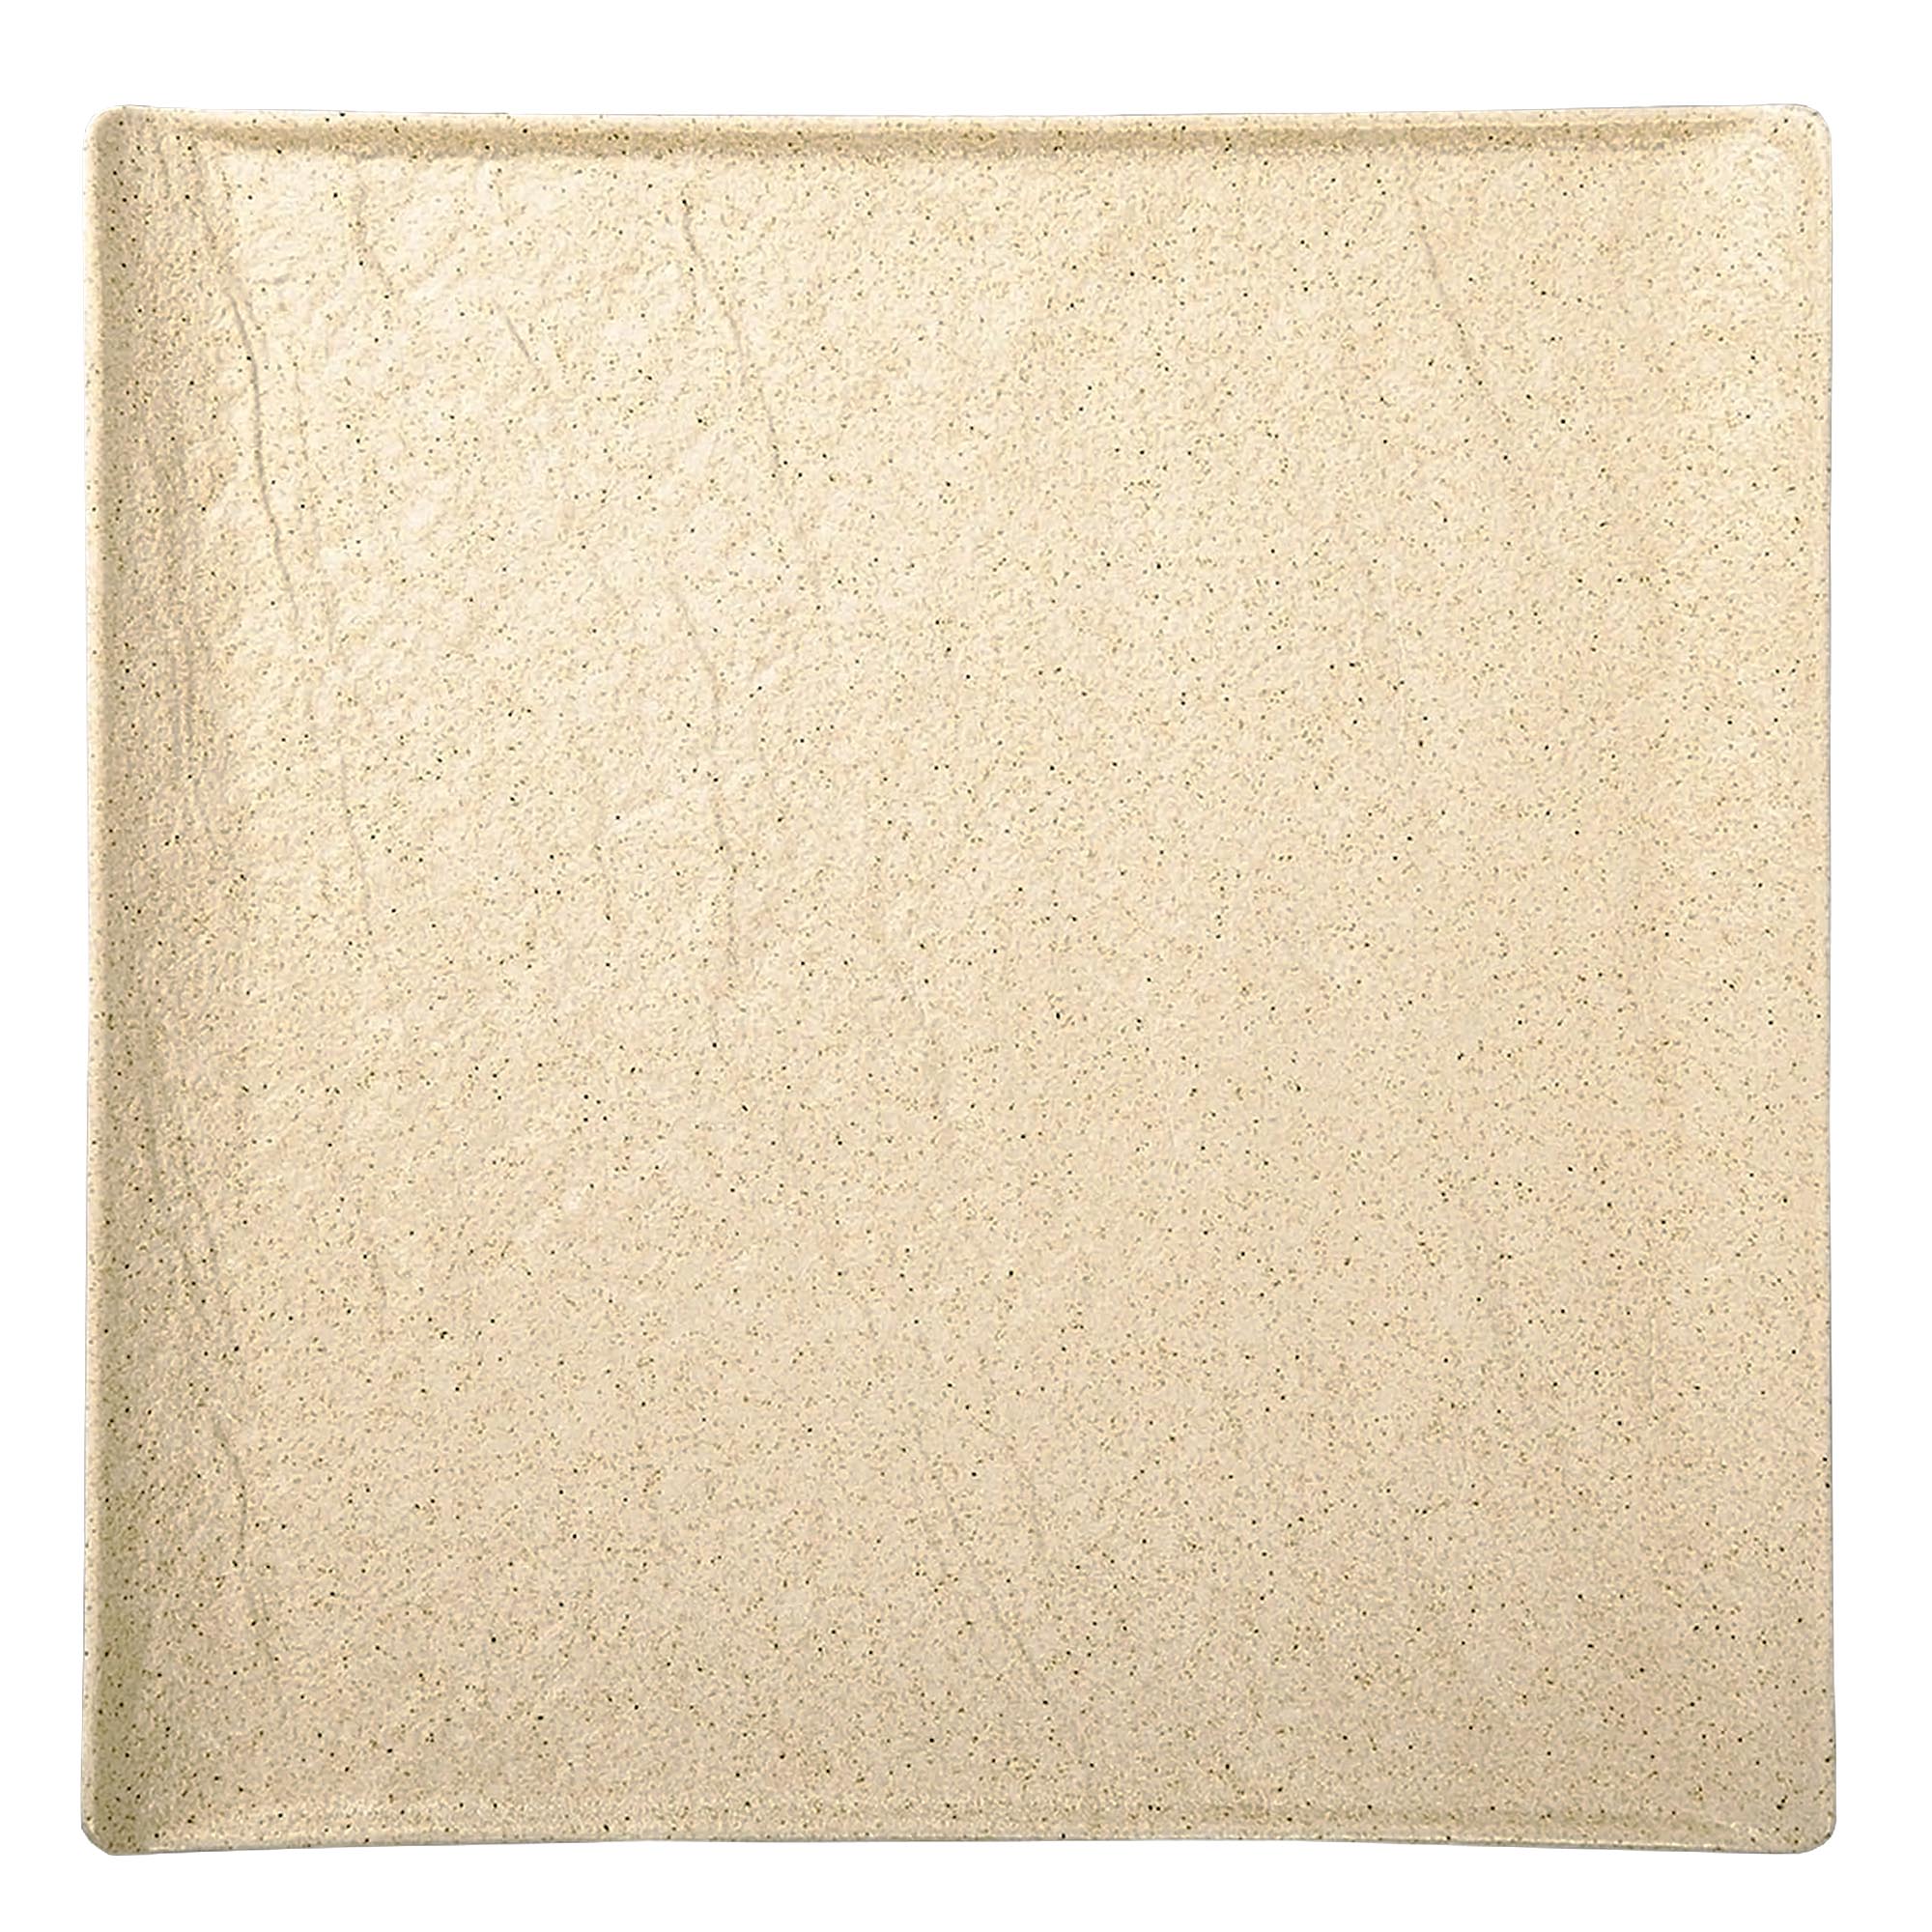 тарелка квадратная wilmax slatestone фарфор 27х27 см Тарелка квадратная Wilmax SandStone фарфор 21,5х21,5 см